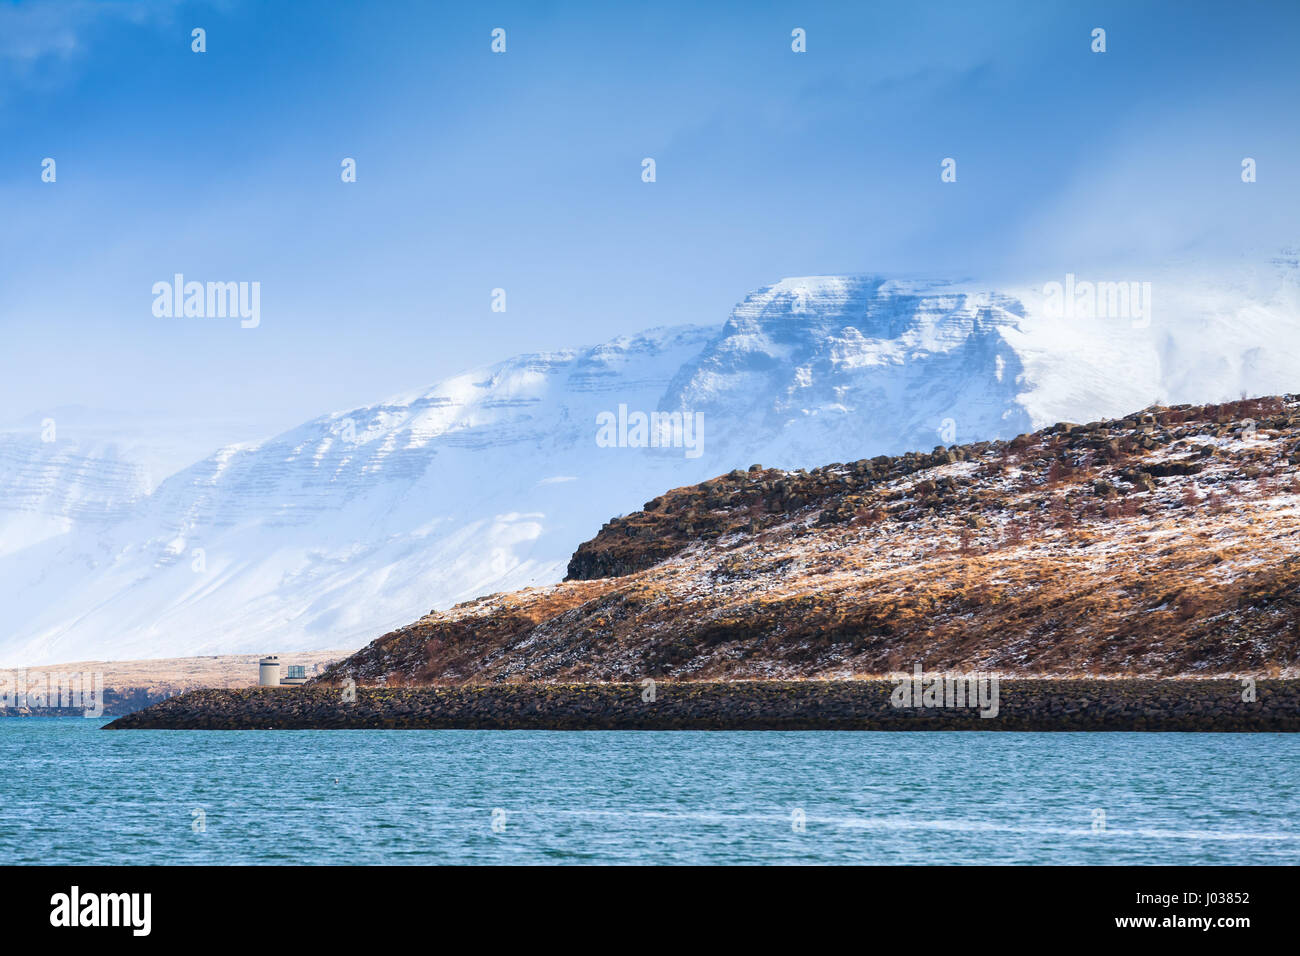 Paysage islandais côtières avec montagnes enneigées sous le bleu ciel nuageux. Région de Reykjavik, Islande Banque D'Images